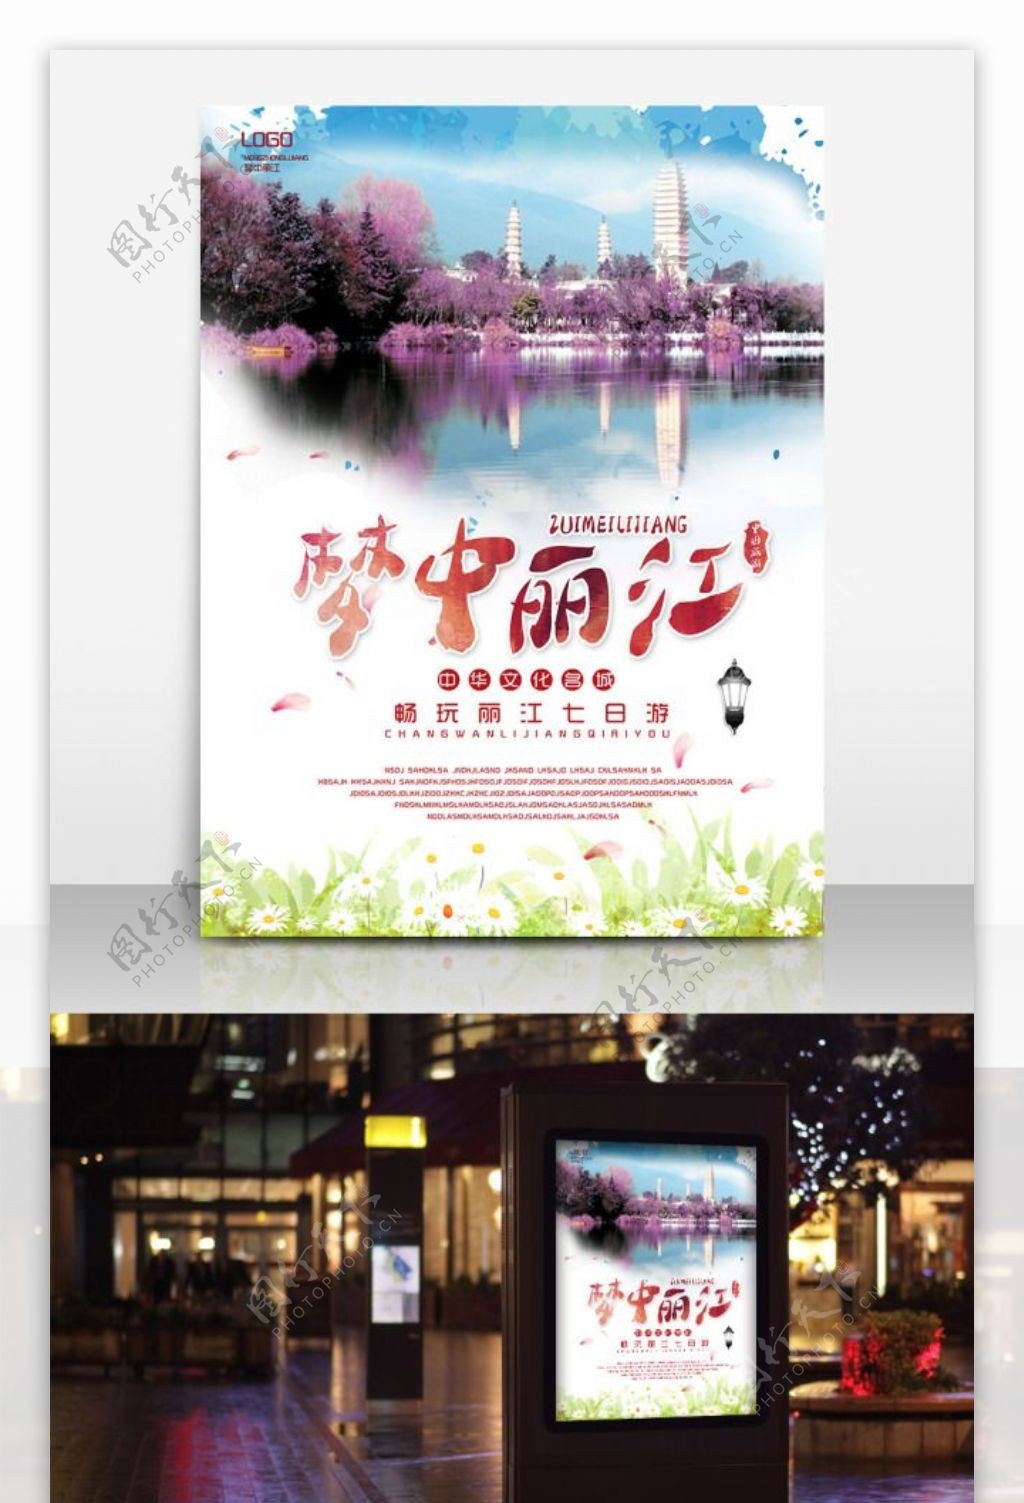 梦中丽江大理夏季旅游优惠海报设计